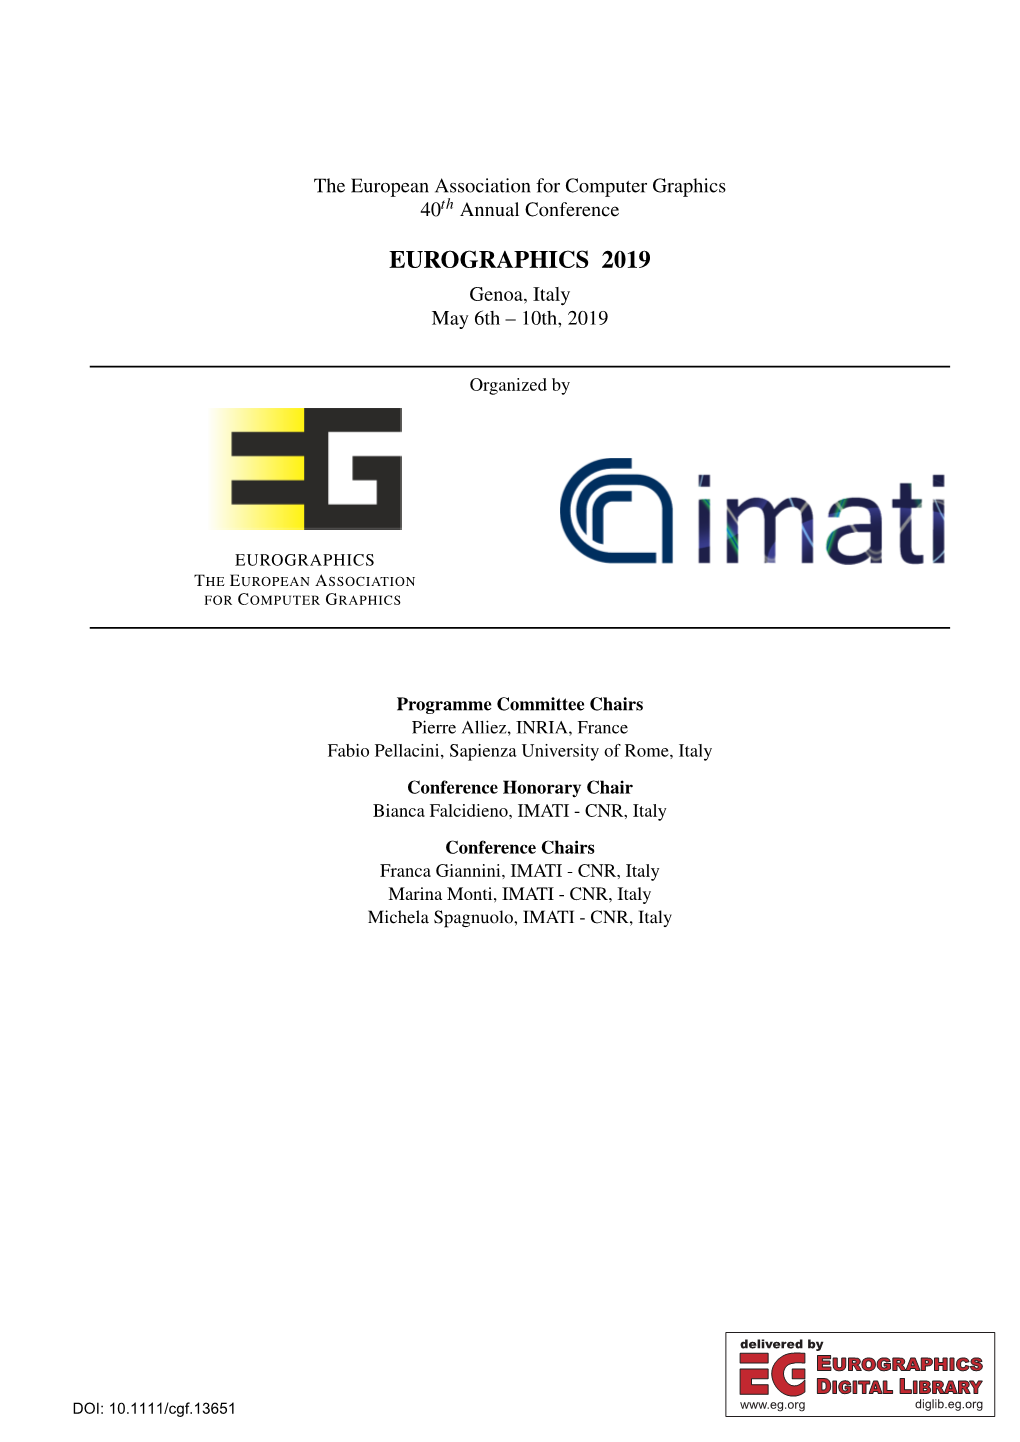 EUROGRAPHICS 2019 Genoa, Italy May 6Th – 10Th, 2019